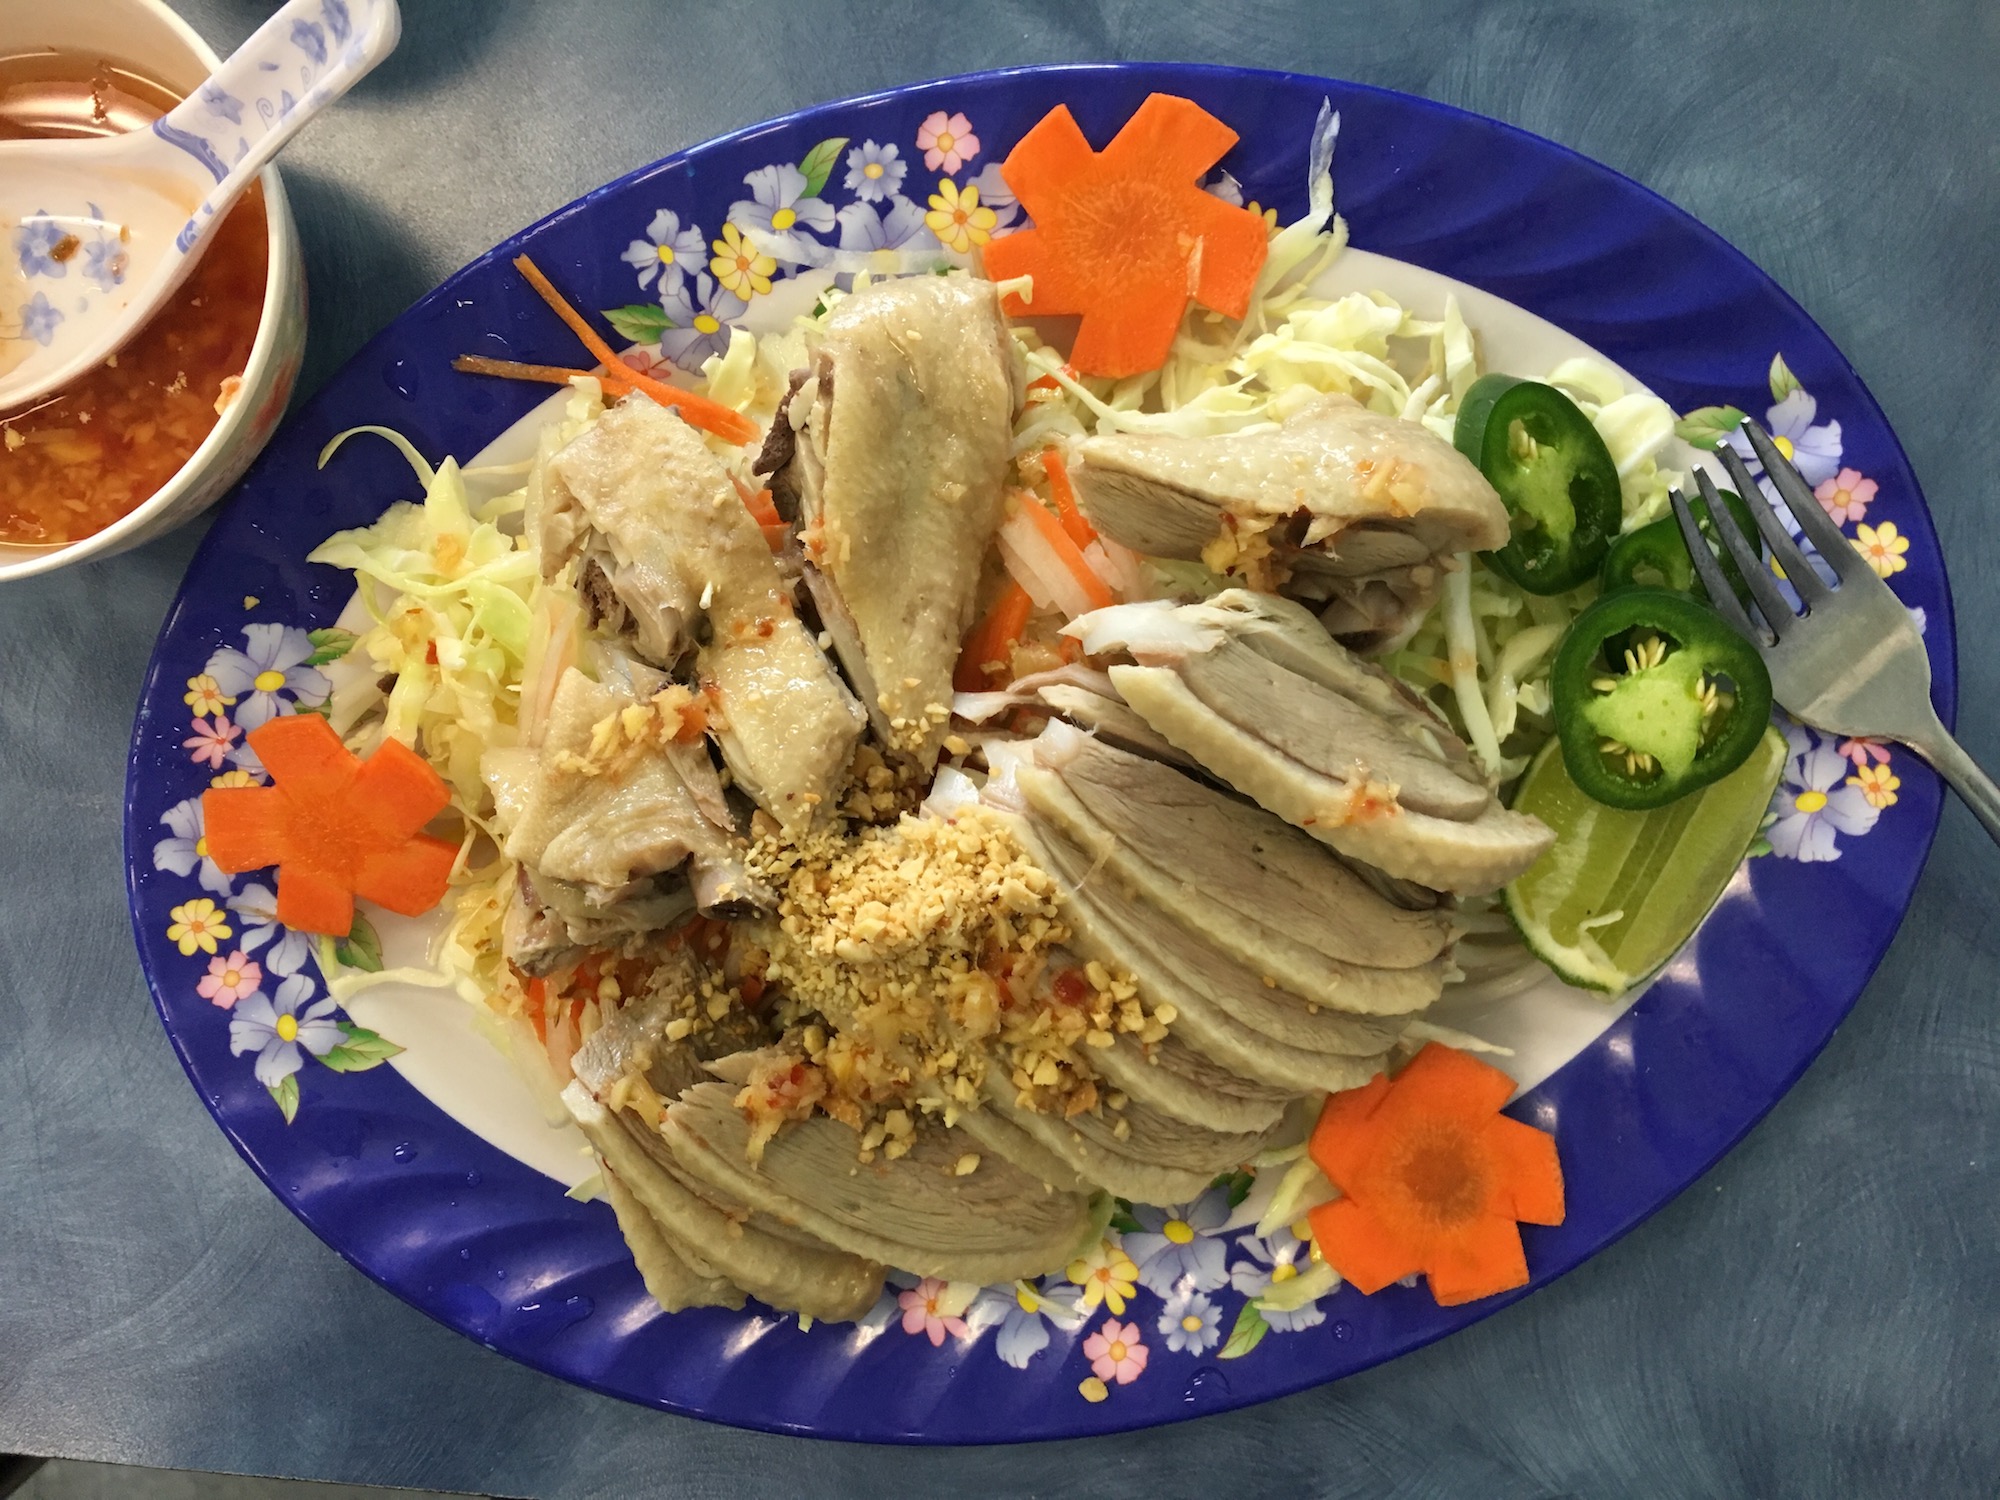 Nhu Thuy's duck salad.